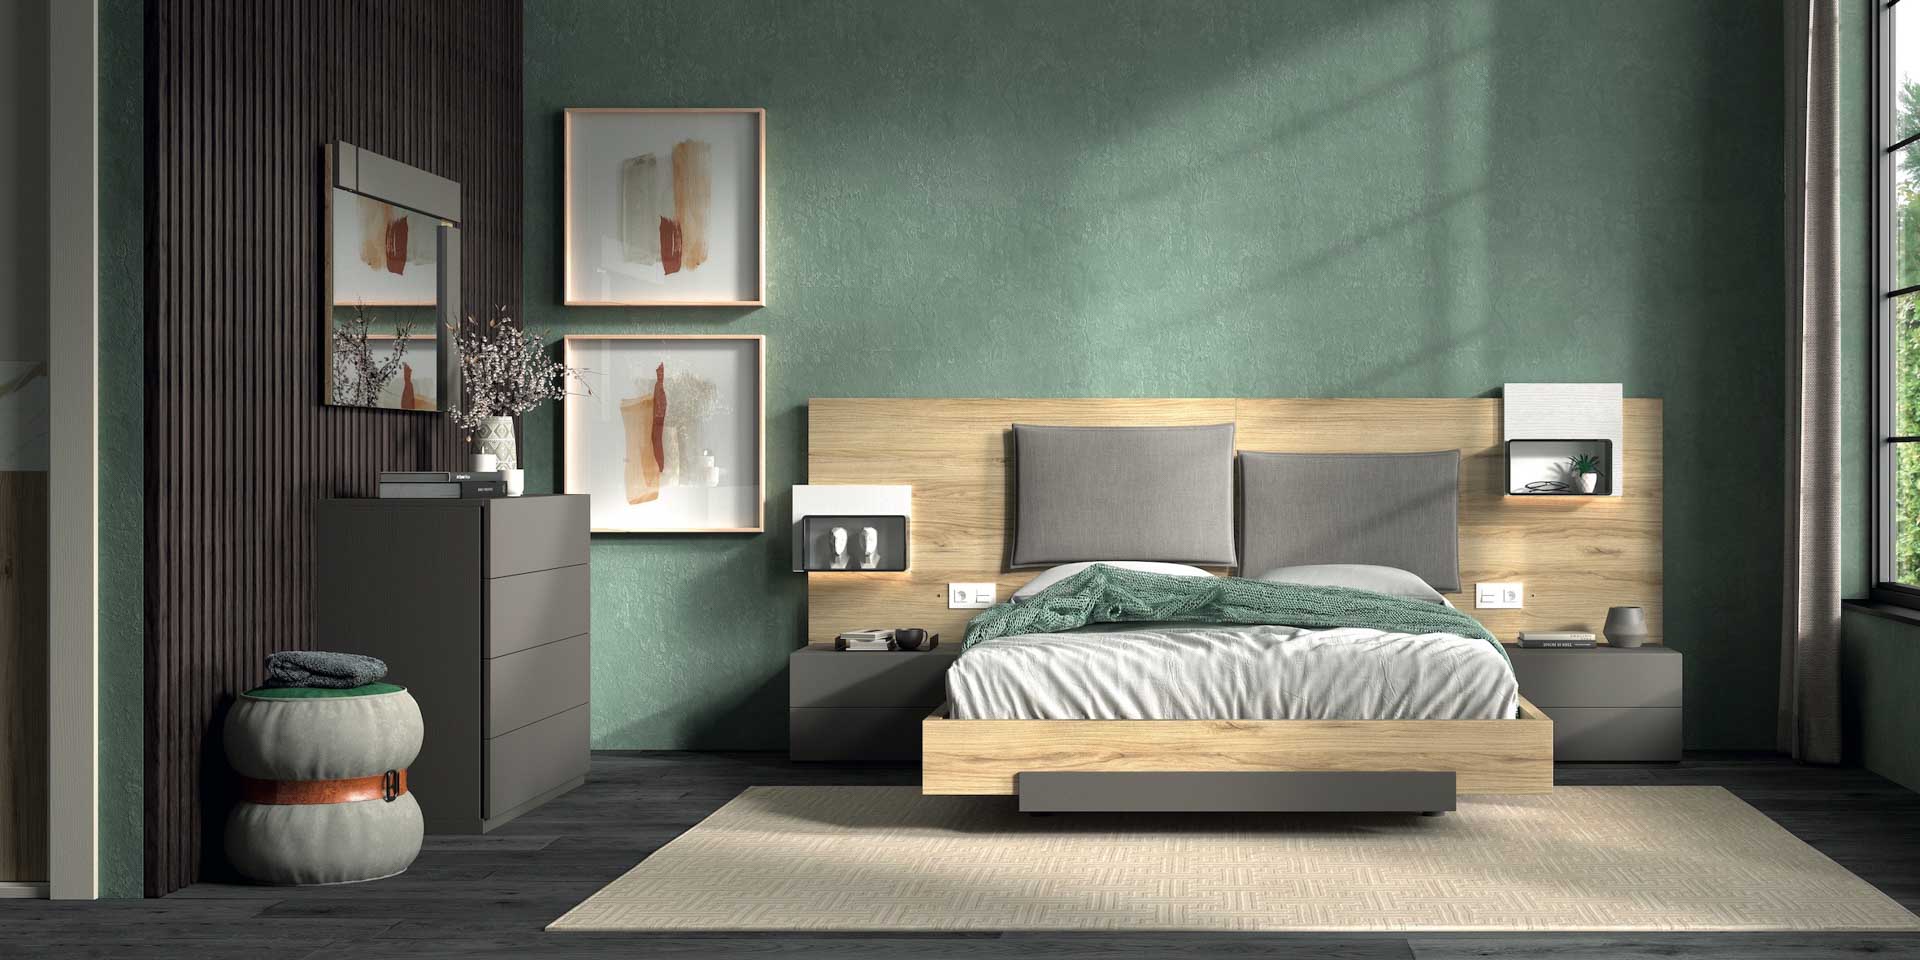 Diseño de mobiliario de dormitorio 77